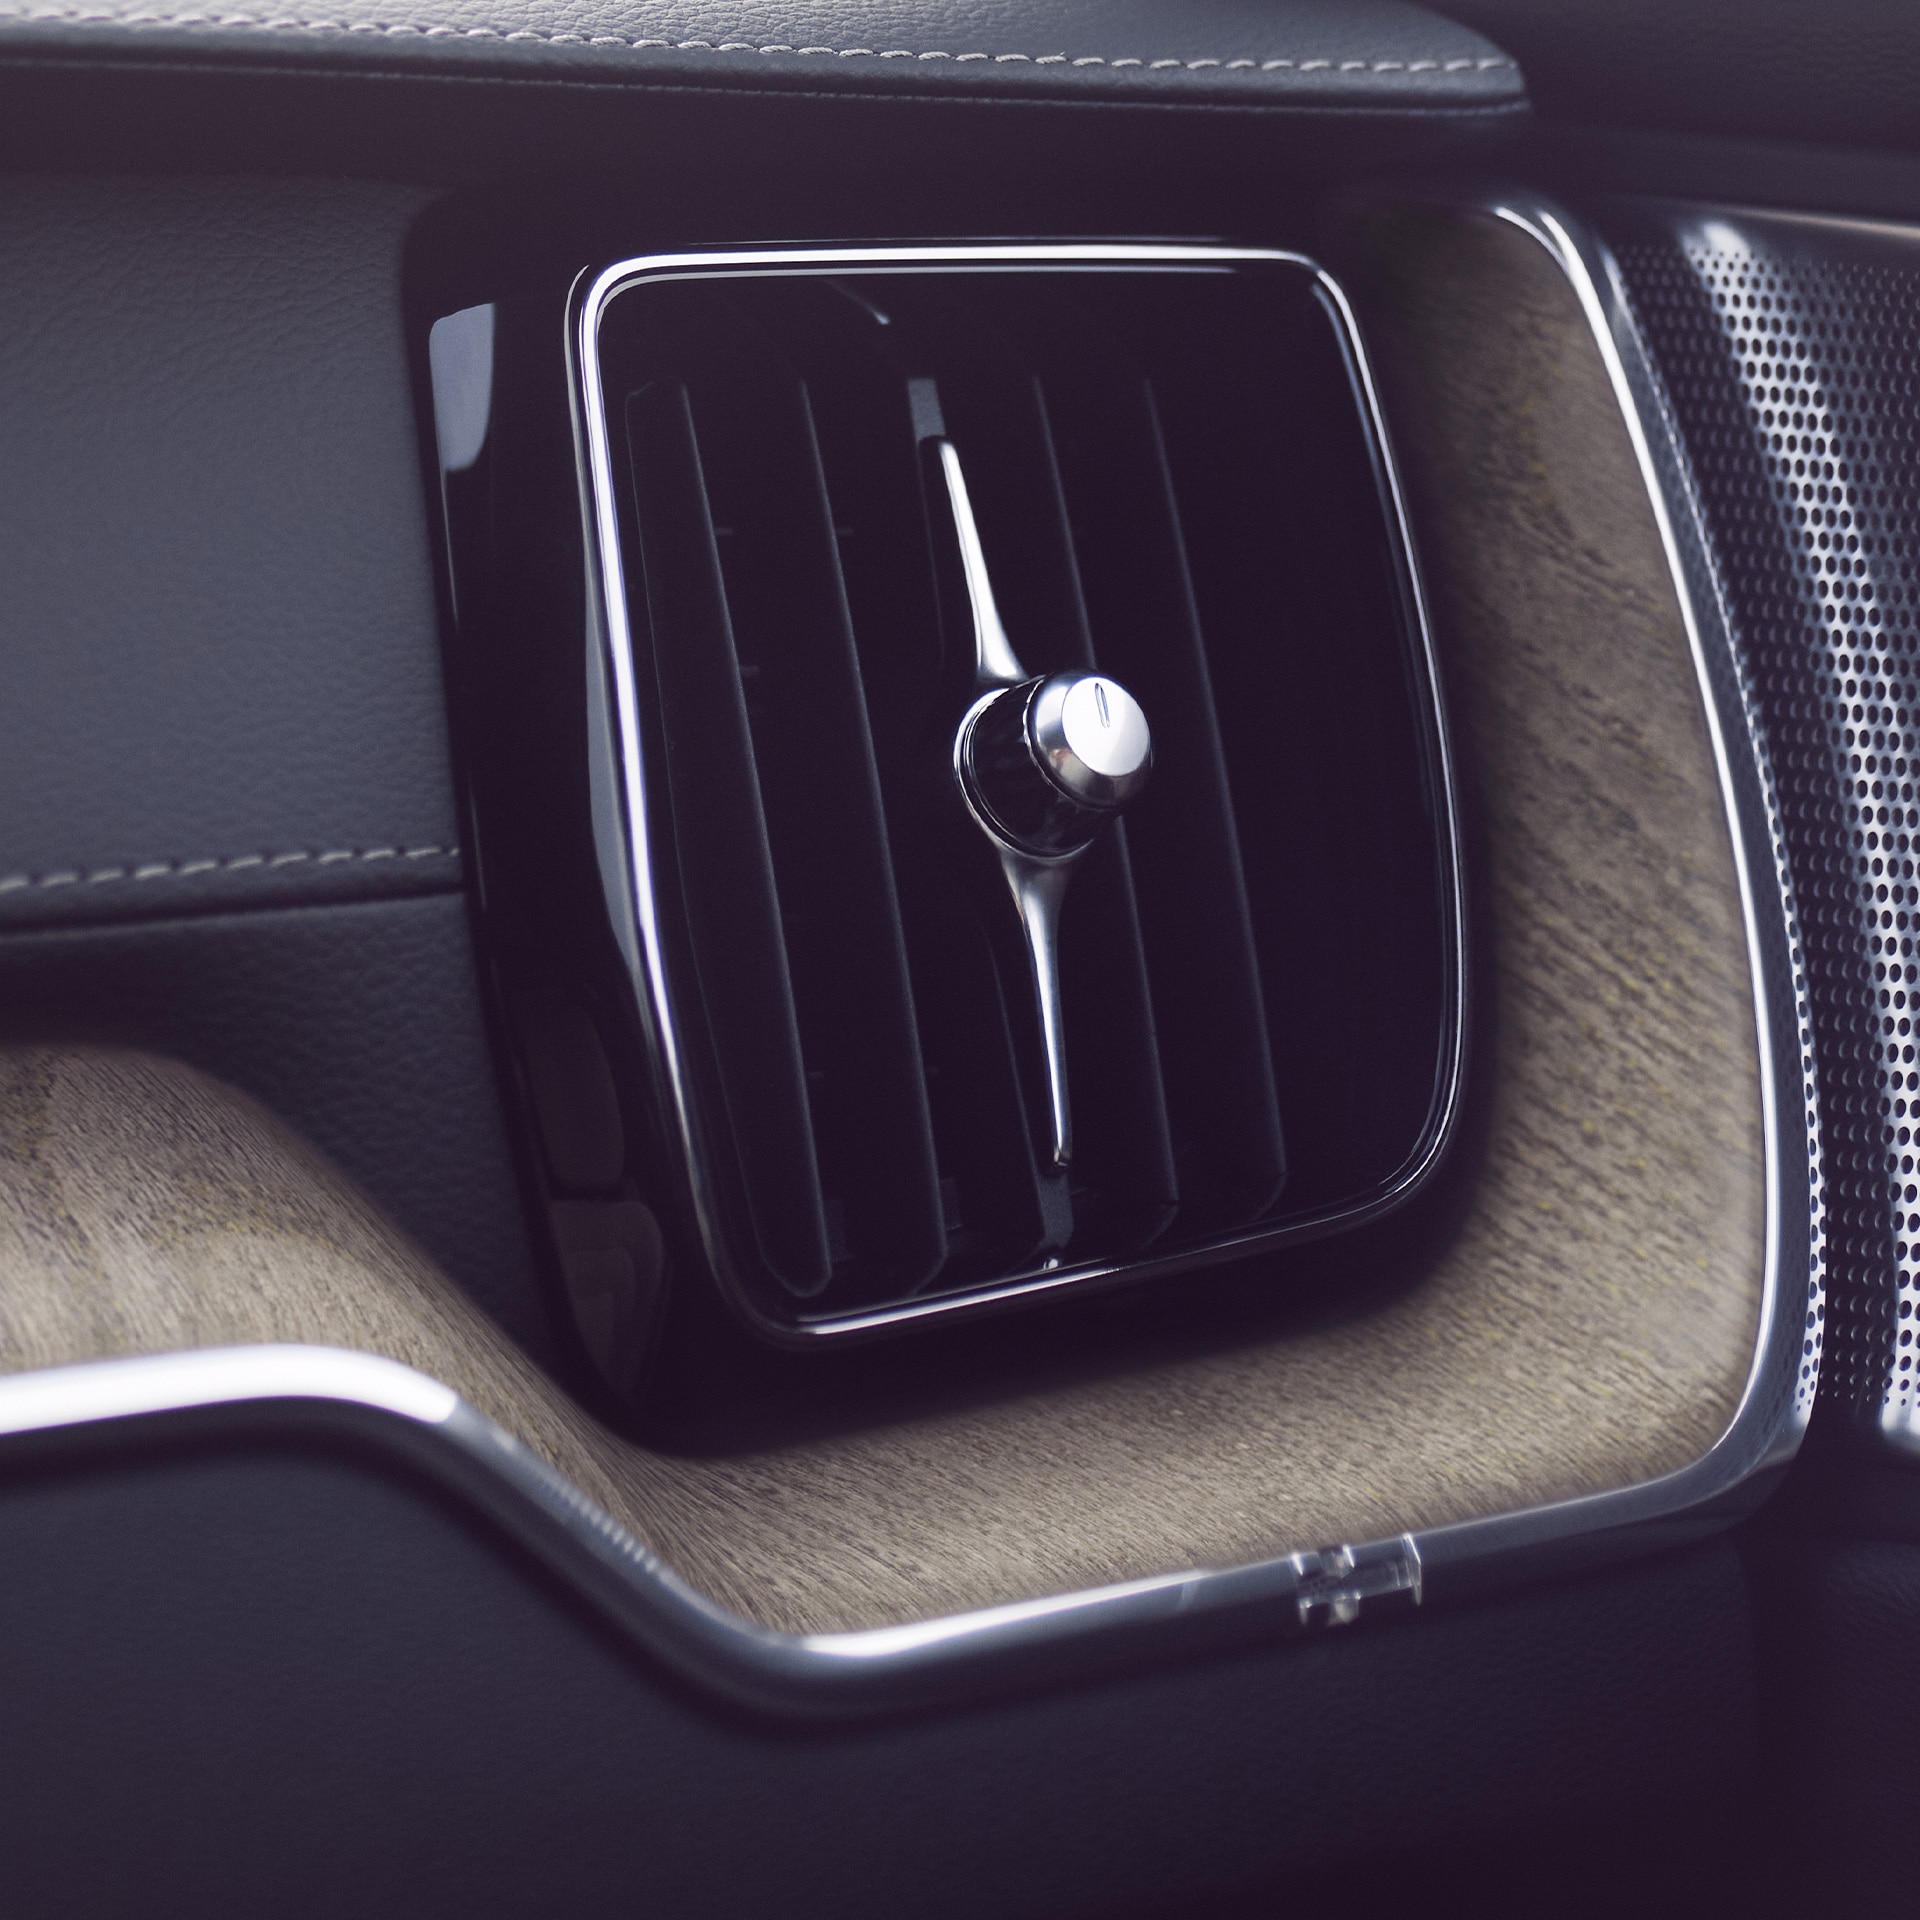 Le purificateur d'air sophistiqué de la Volvo XC60 permet aux occupants de la voiture de respirer un air plus sain.